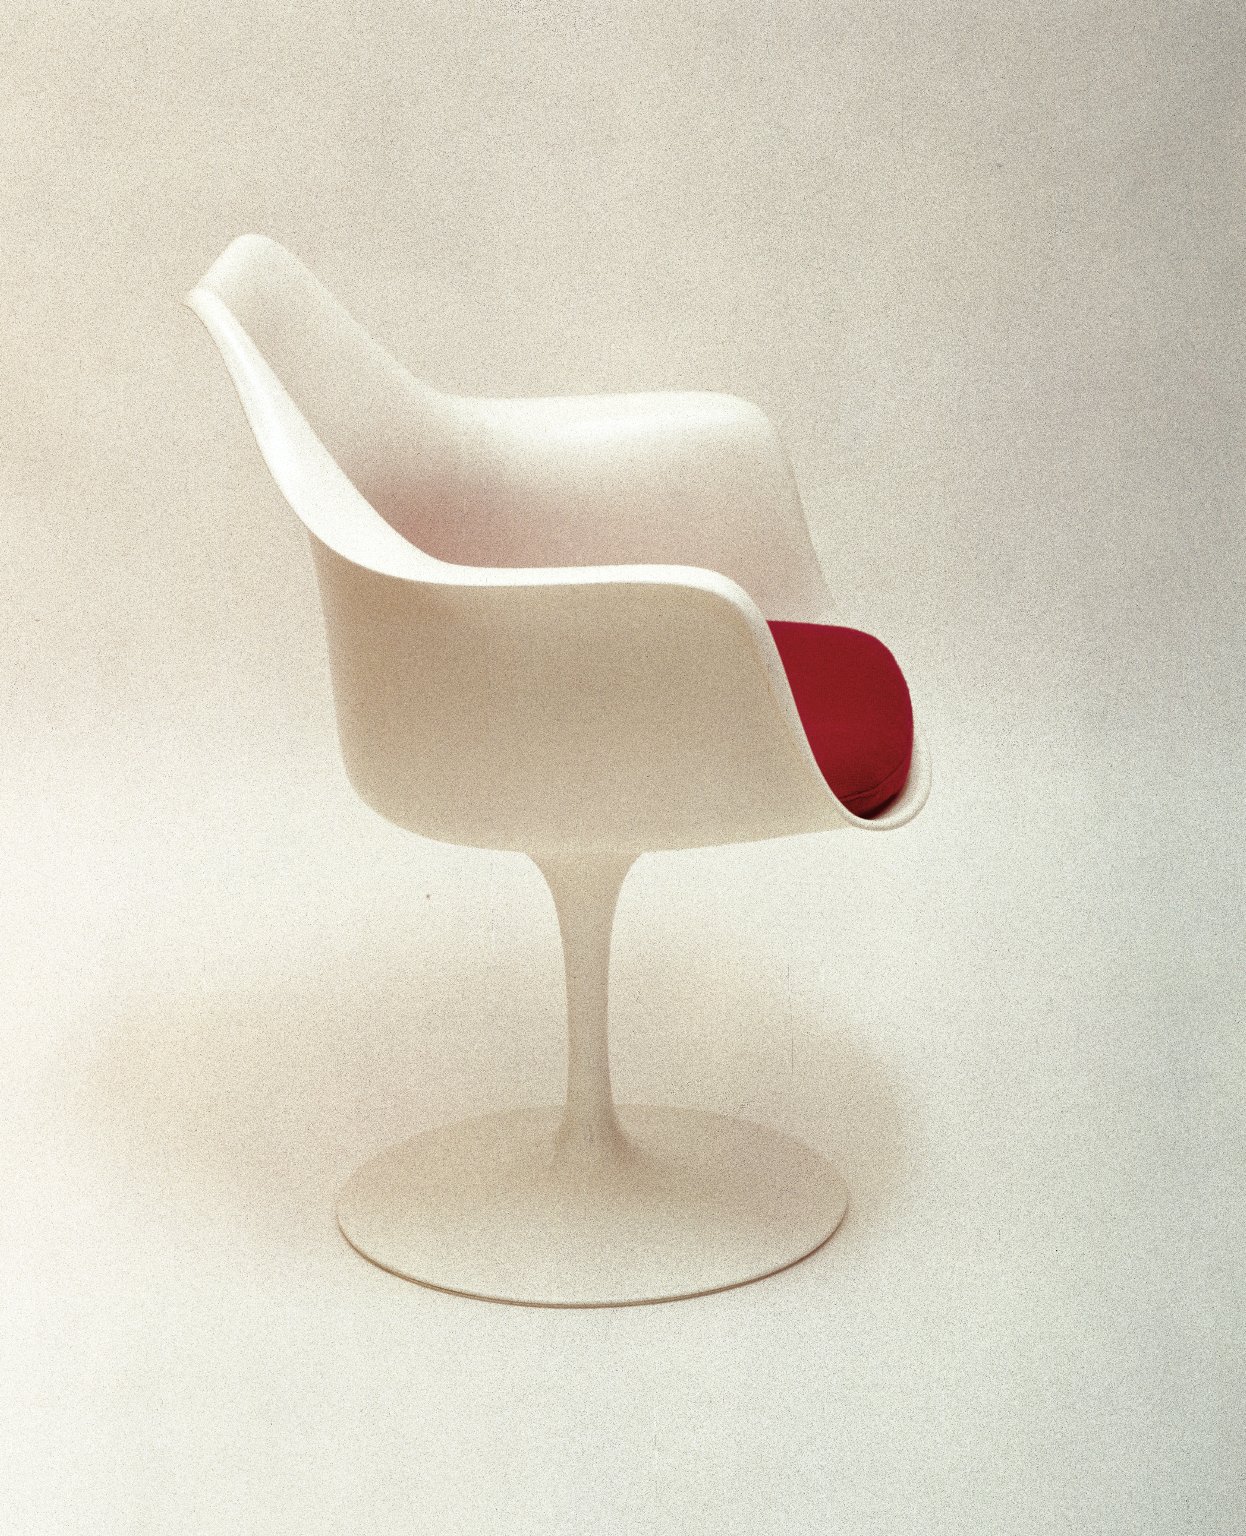 'Pedestal' Armchair and Seat Cushion